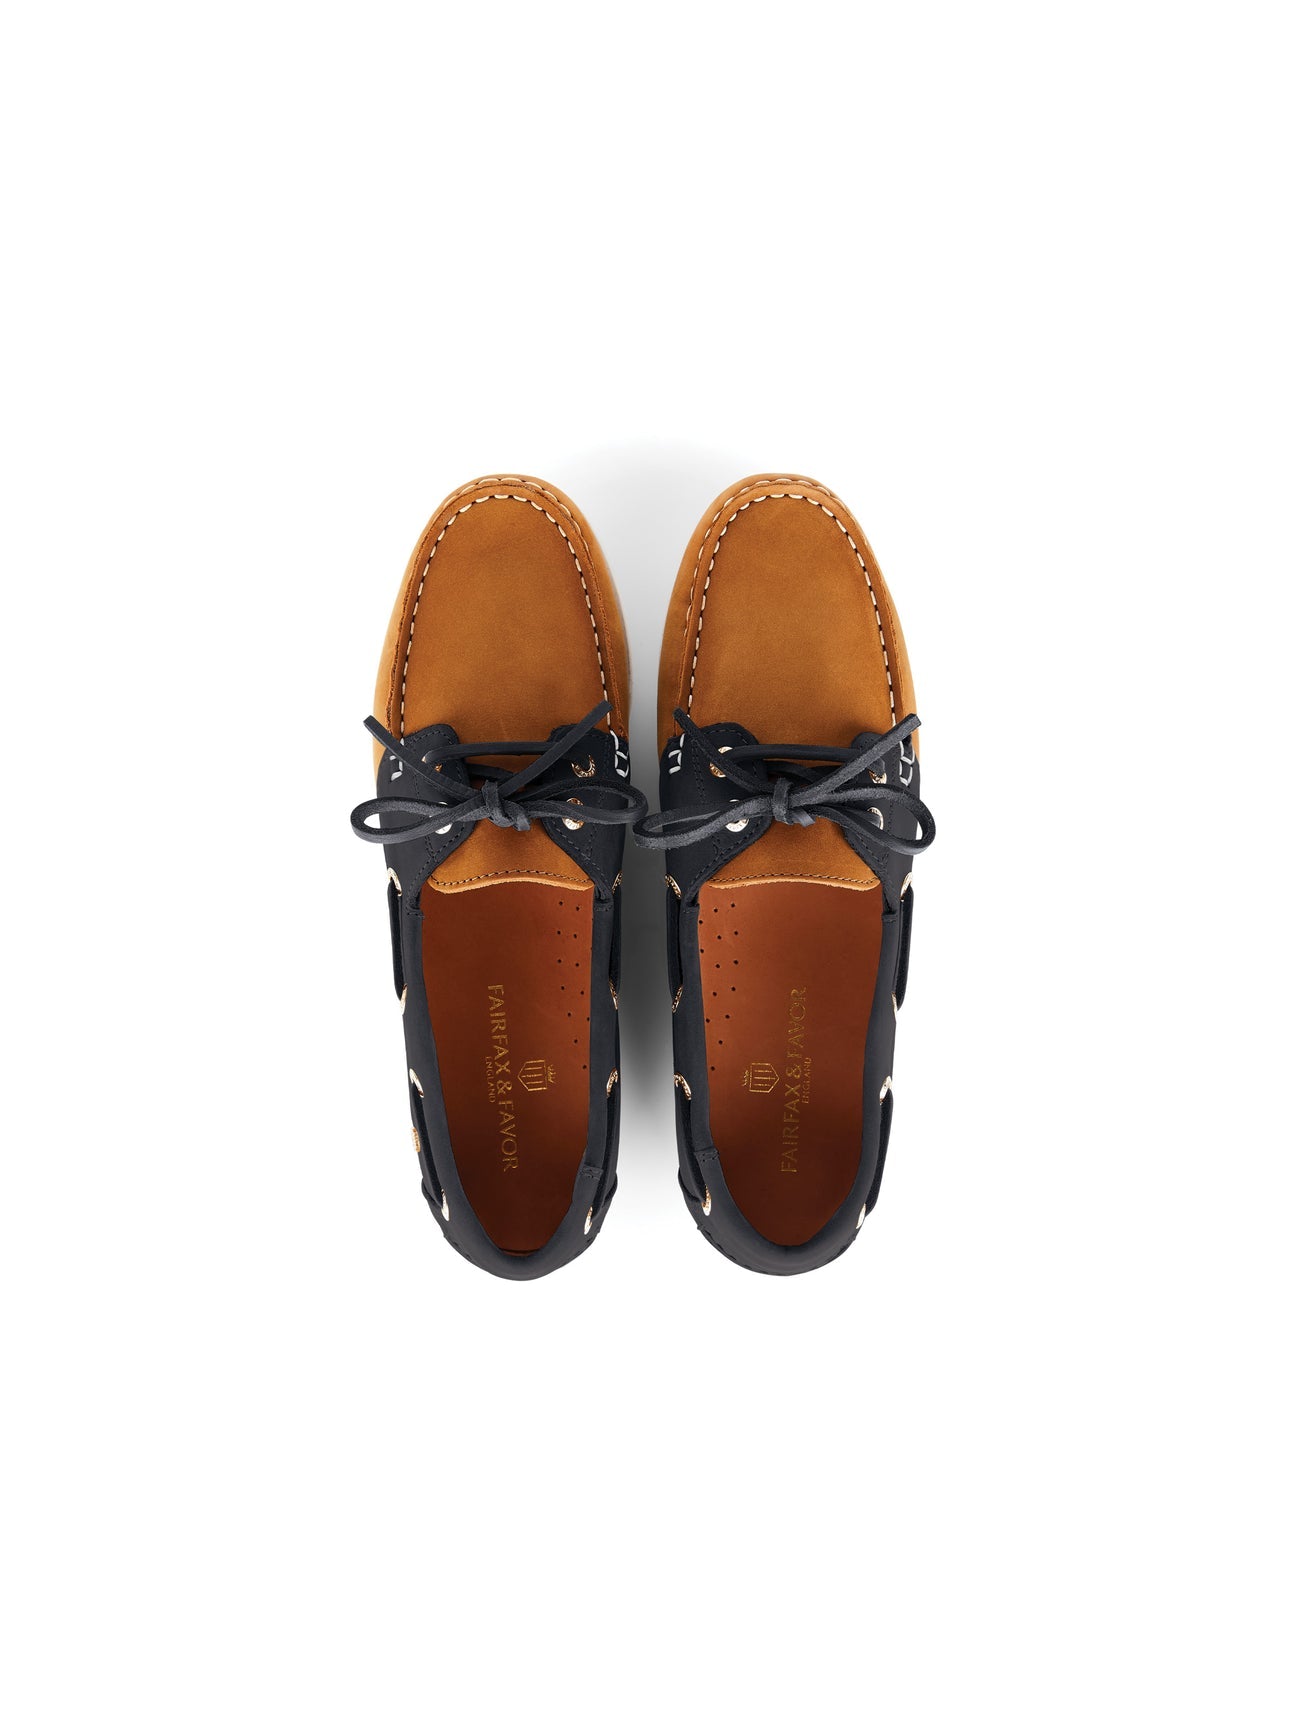 Salcombe Women’s Deck Shoes Tan/Navy